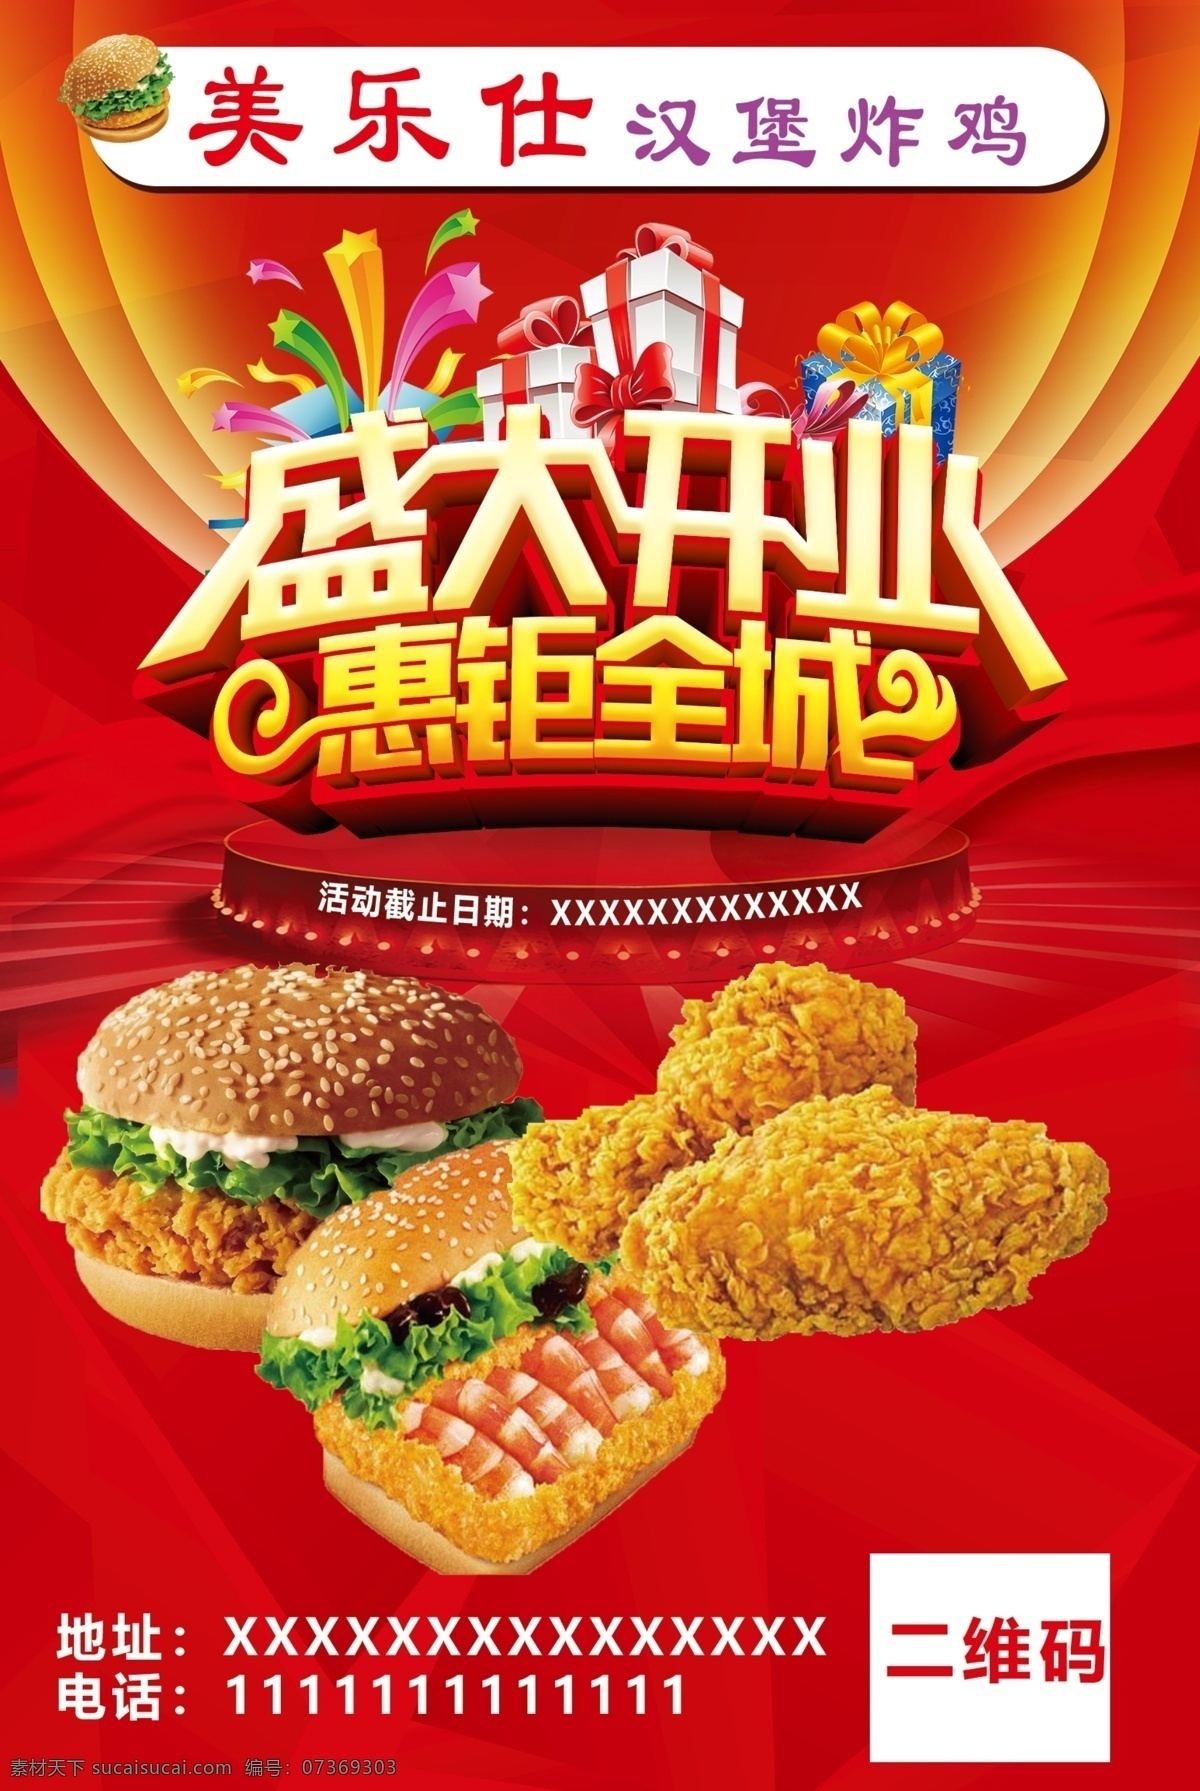 汉堡店宣传单 汉堡 炸鸡 宣传单 红色背景 盛大开业 分层